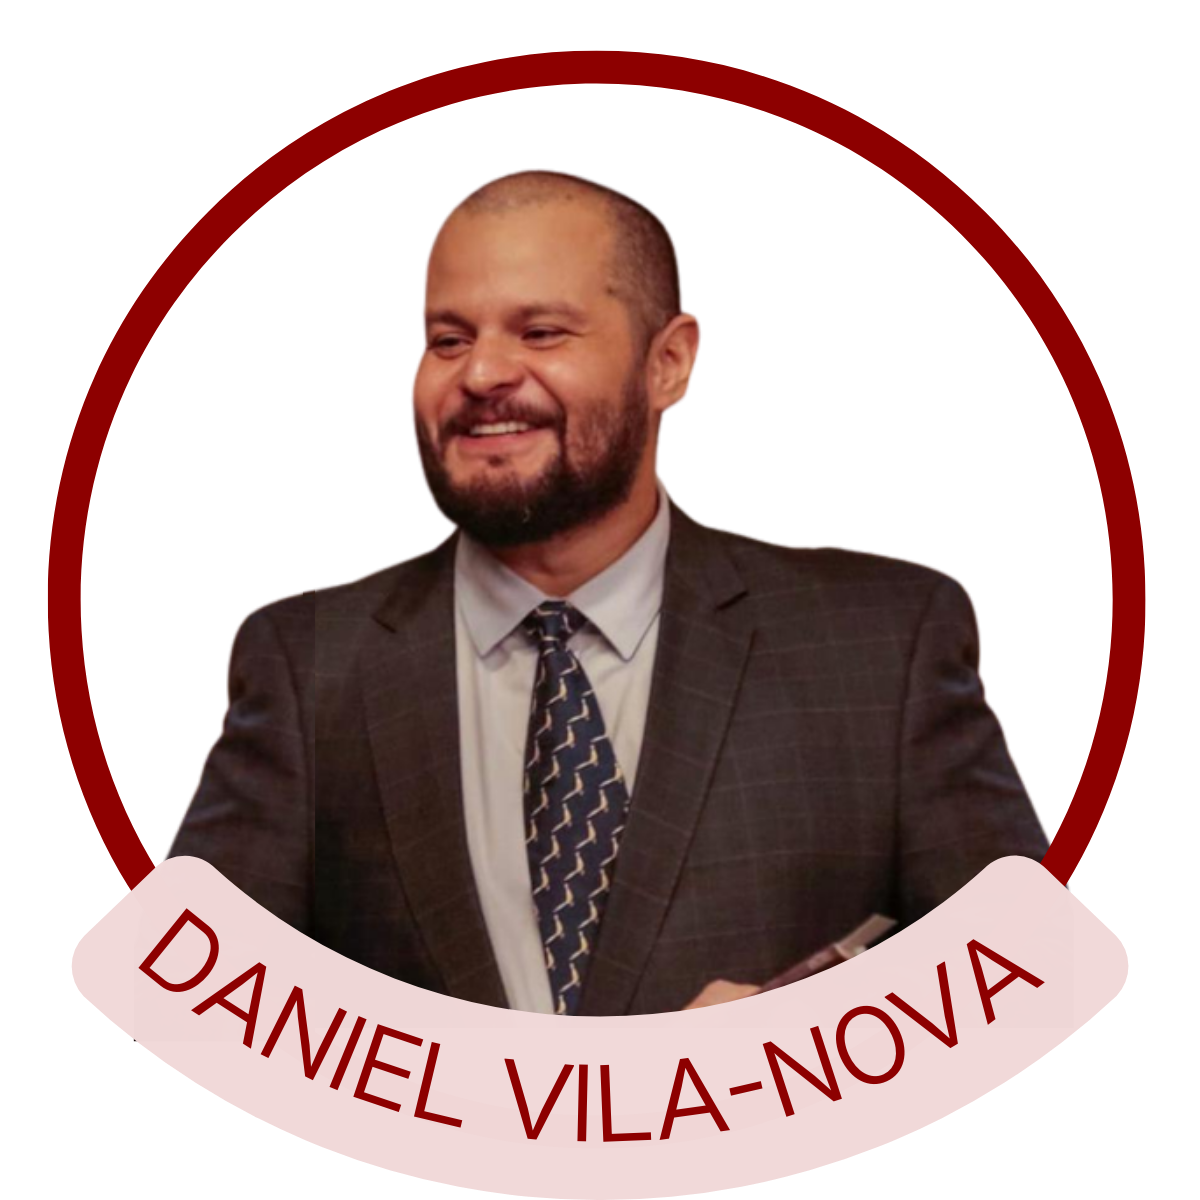 Daniel Augusto Vila-Nova Gomes Vila-Nova